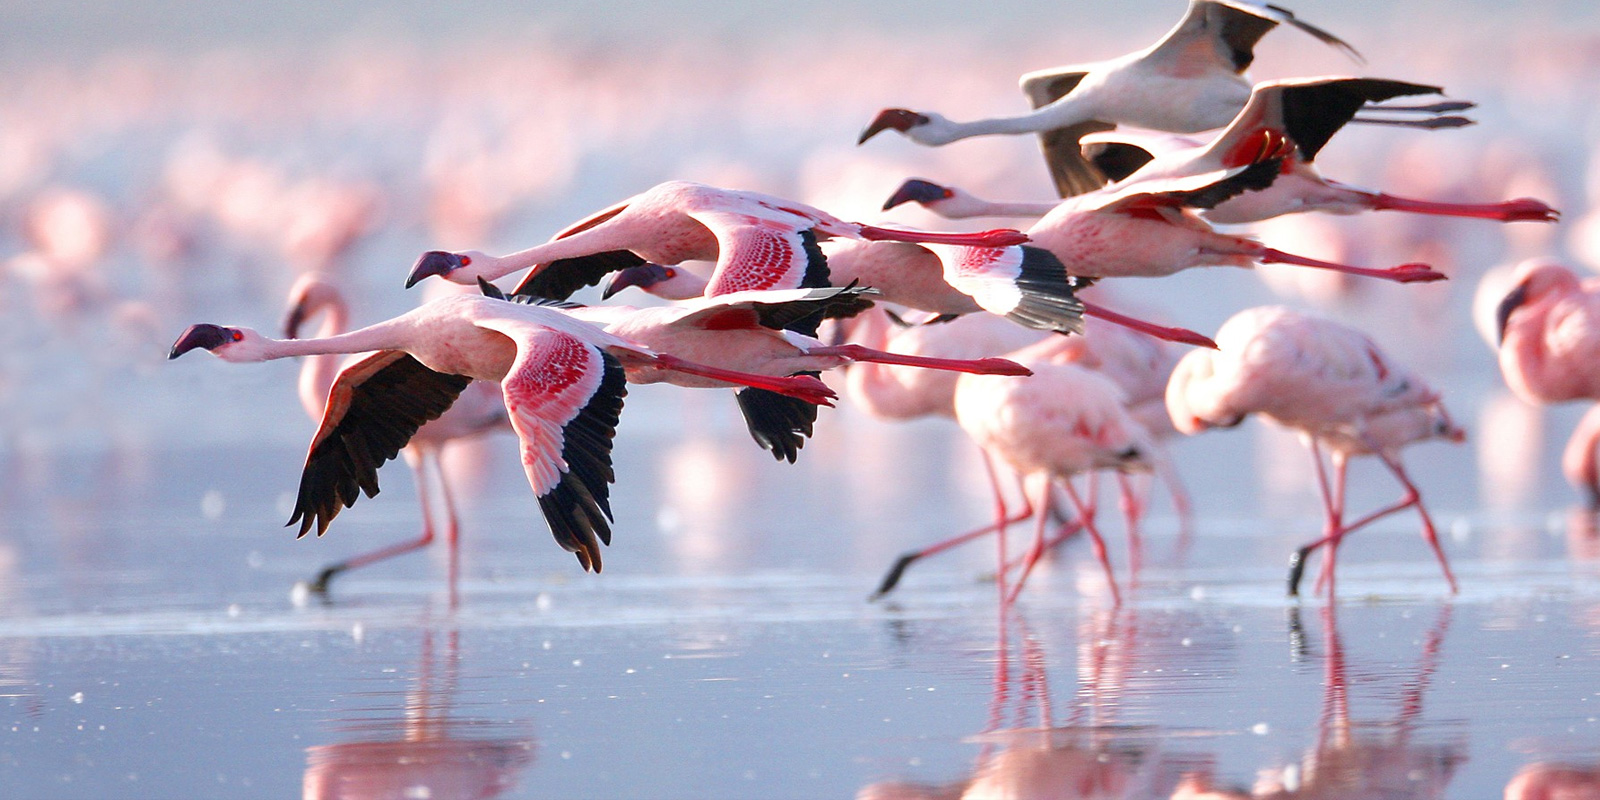 Flamingos in flight at Lake Nakuru national park